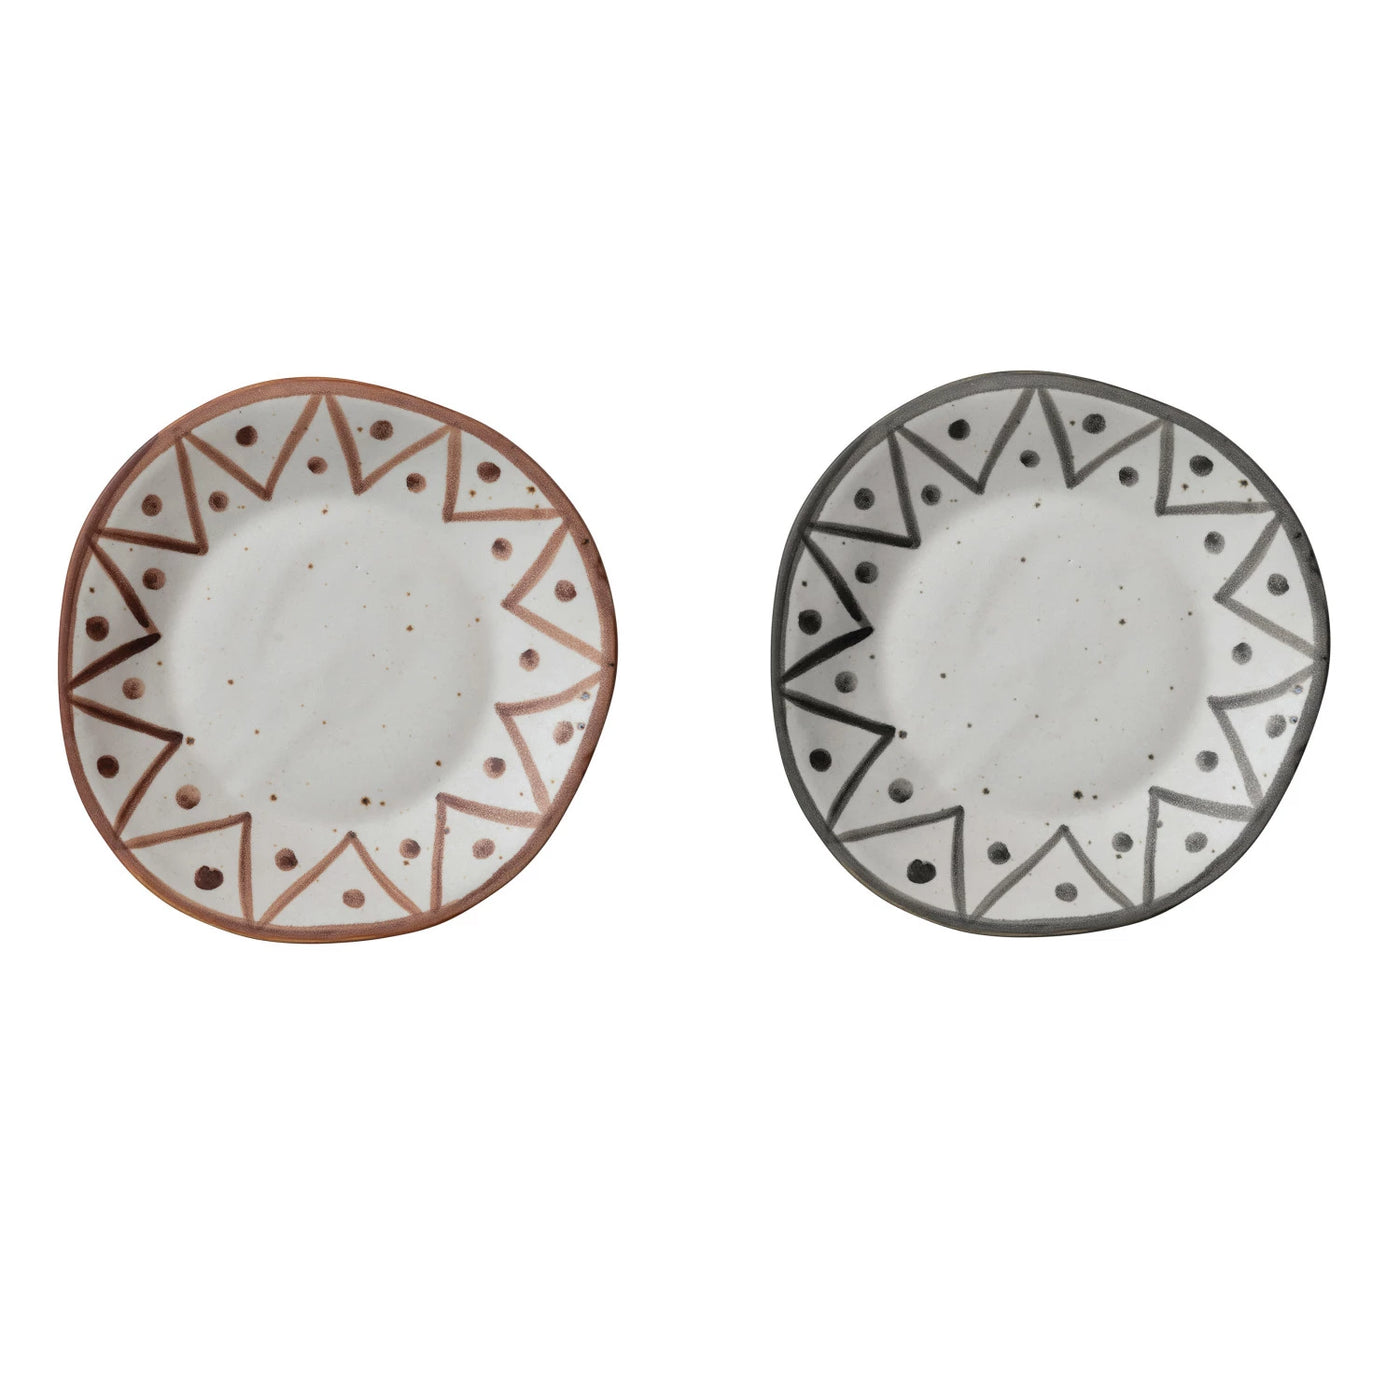 Boho Stoneware Plates